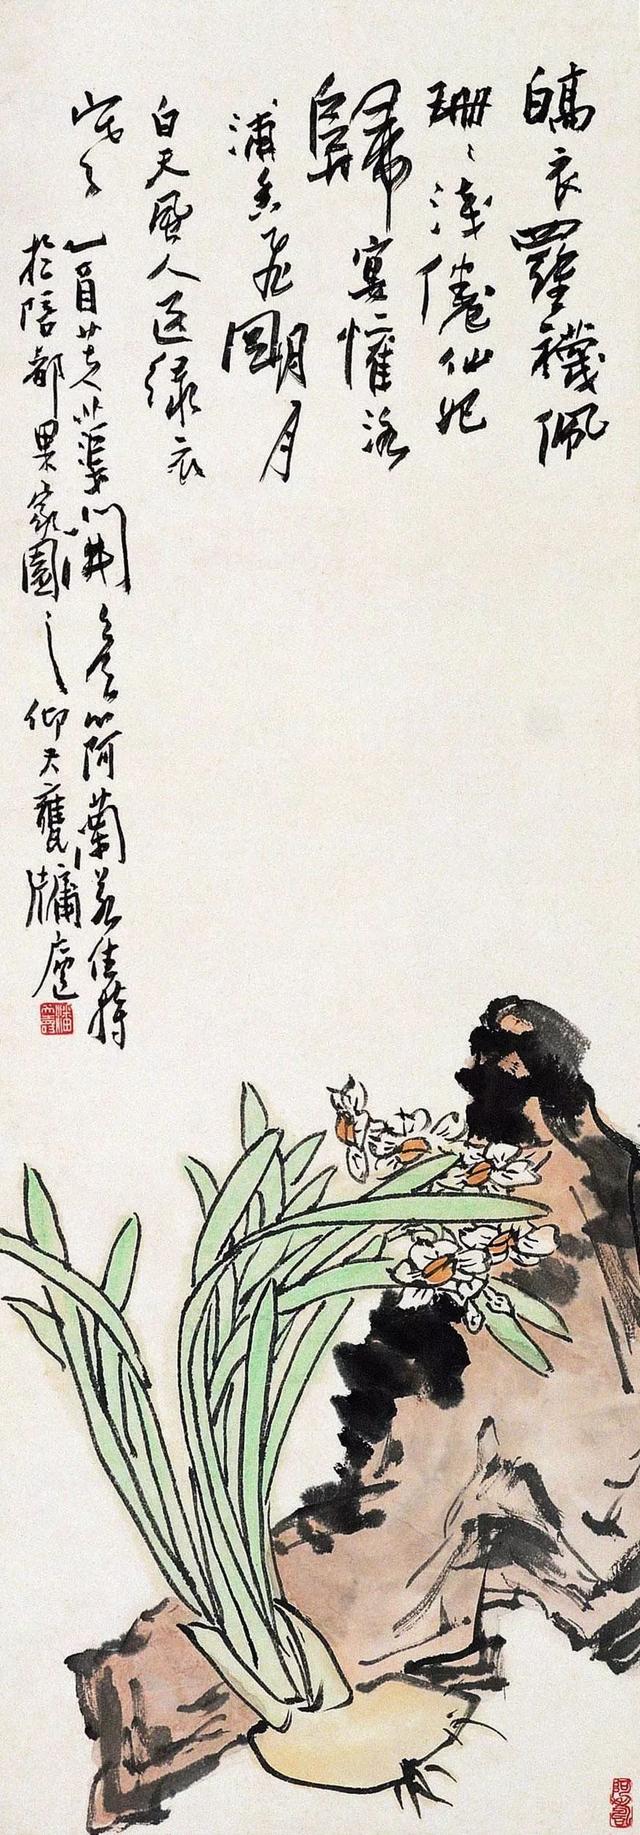 潘天寿题画诗100首,一代宗师的风骨情怀